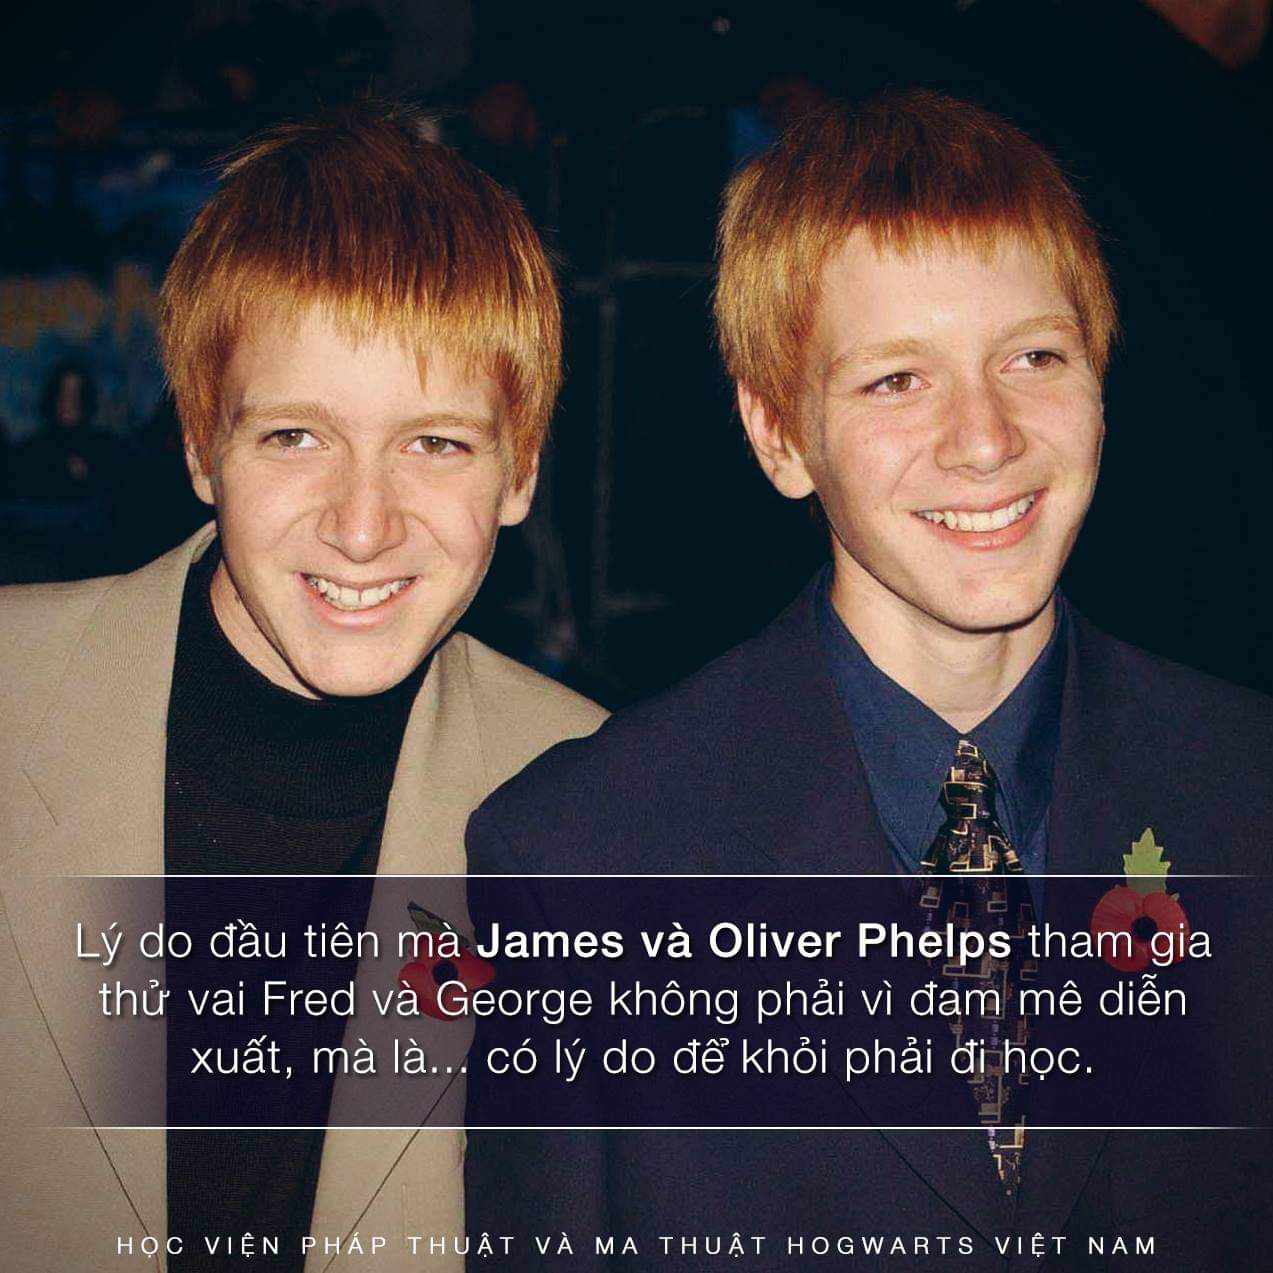 Lý do đằng sau việc James và Oliver Phelps đi thử vai Fred and George Weasley